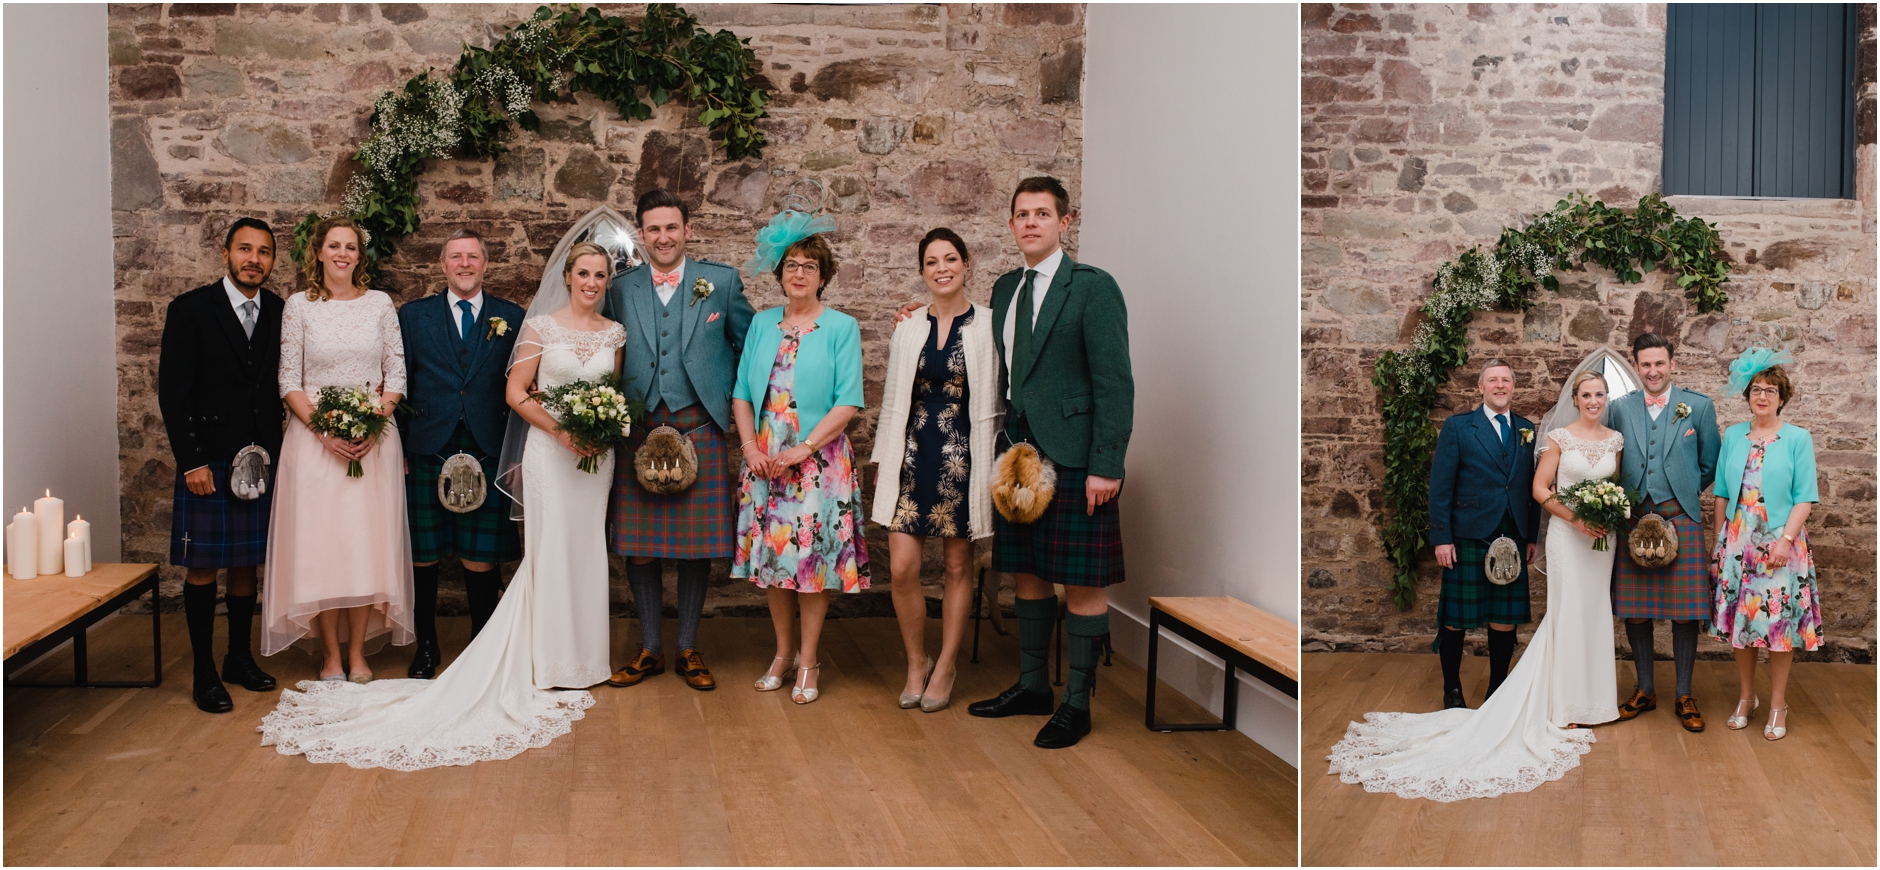 unique barn wedding scotland